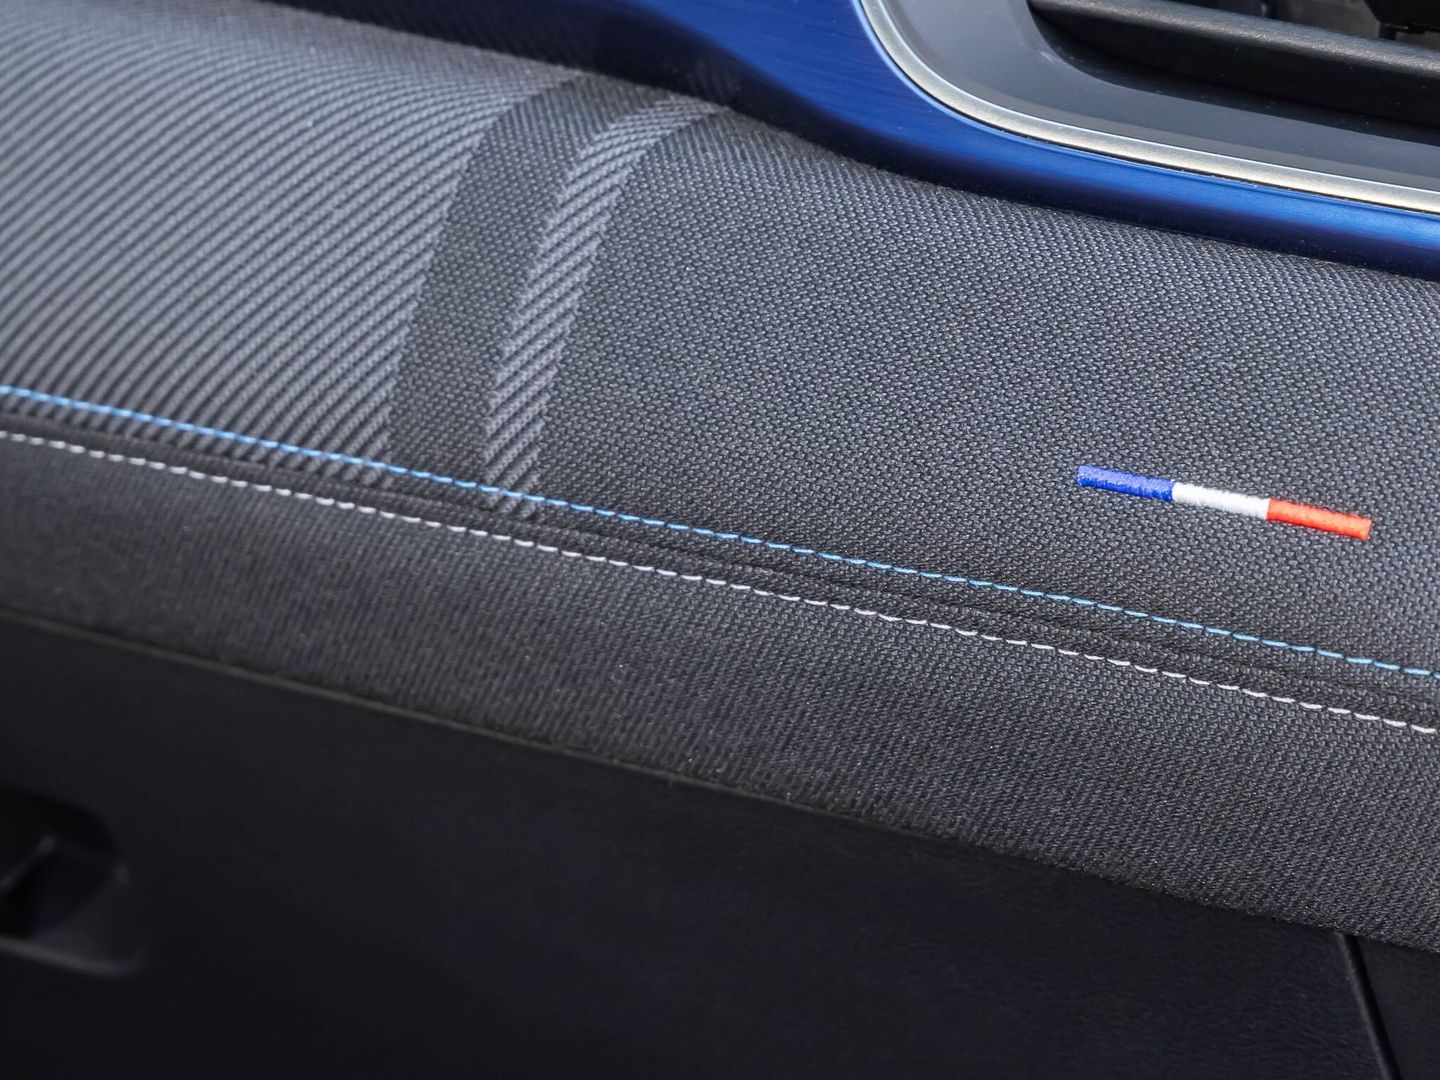 hay buenos materiales, y las versiones Esprit Alpine reciben una personalización muy francesa.